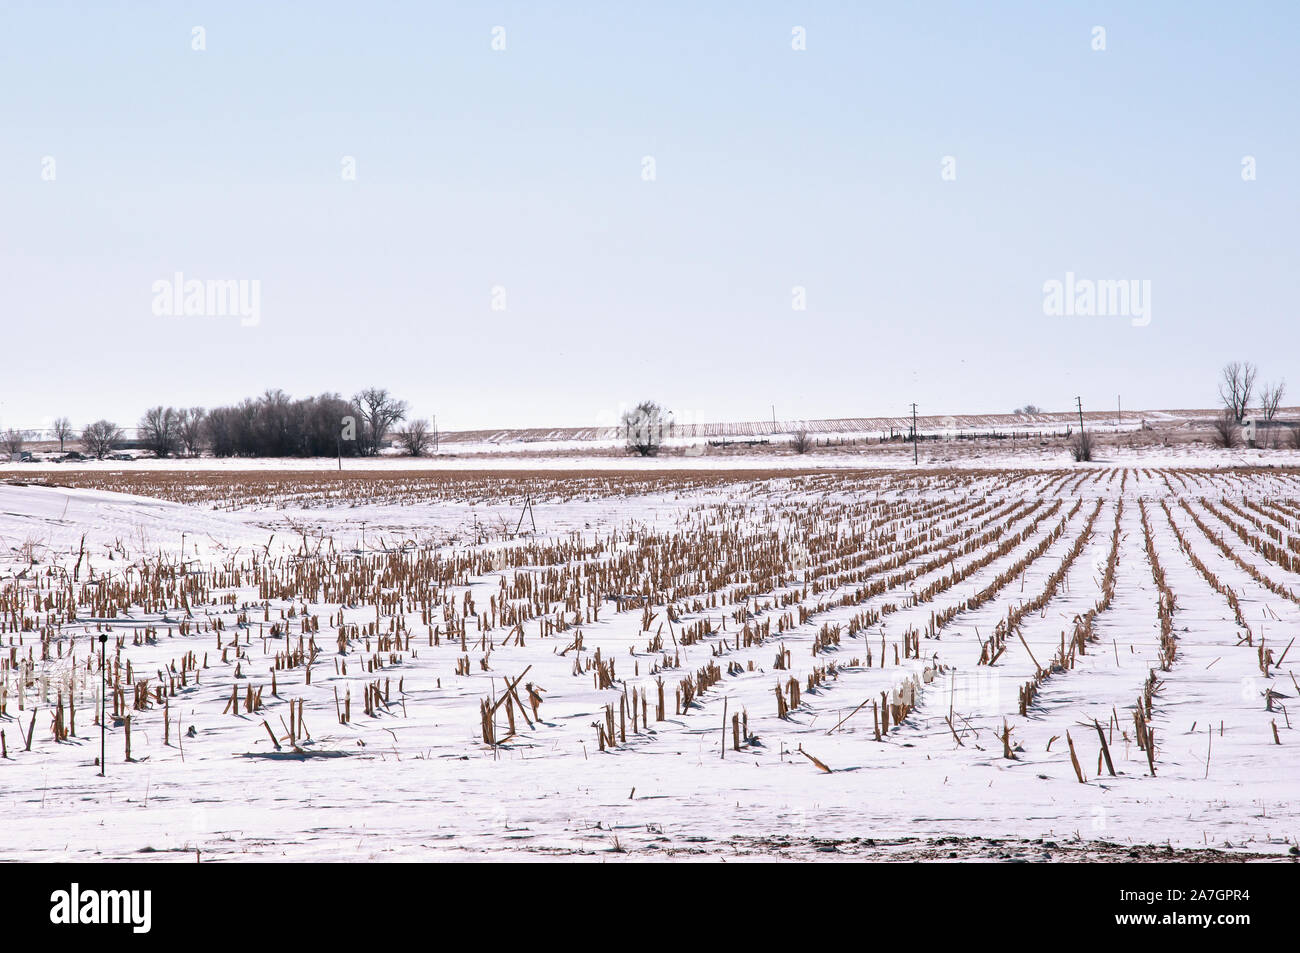 El invierno, la nieve cubre un campo de rastrojo de maíz después de la cosecha Foto de stock